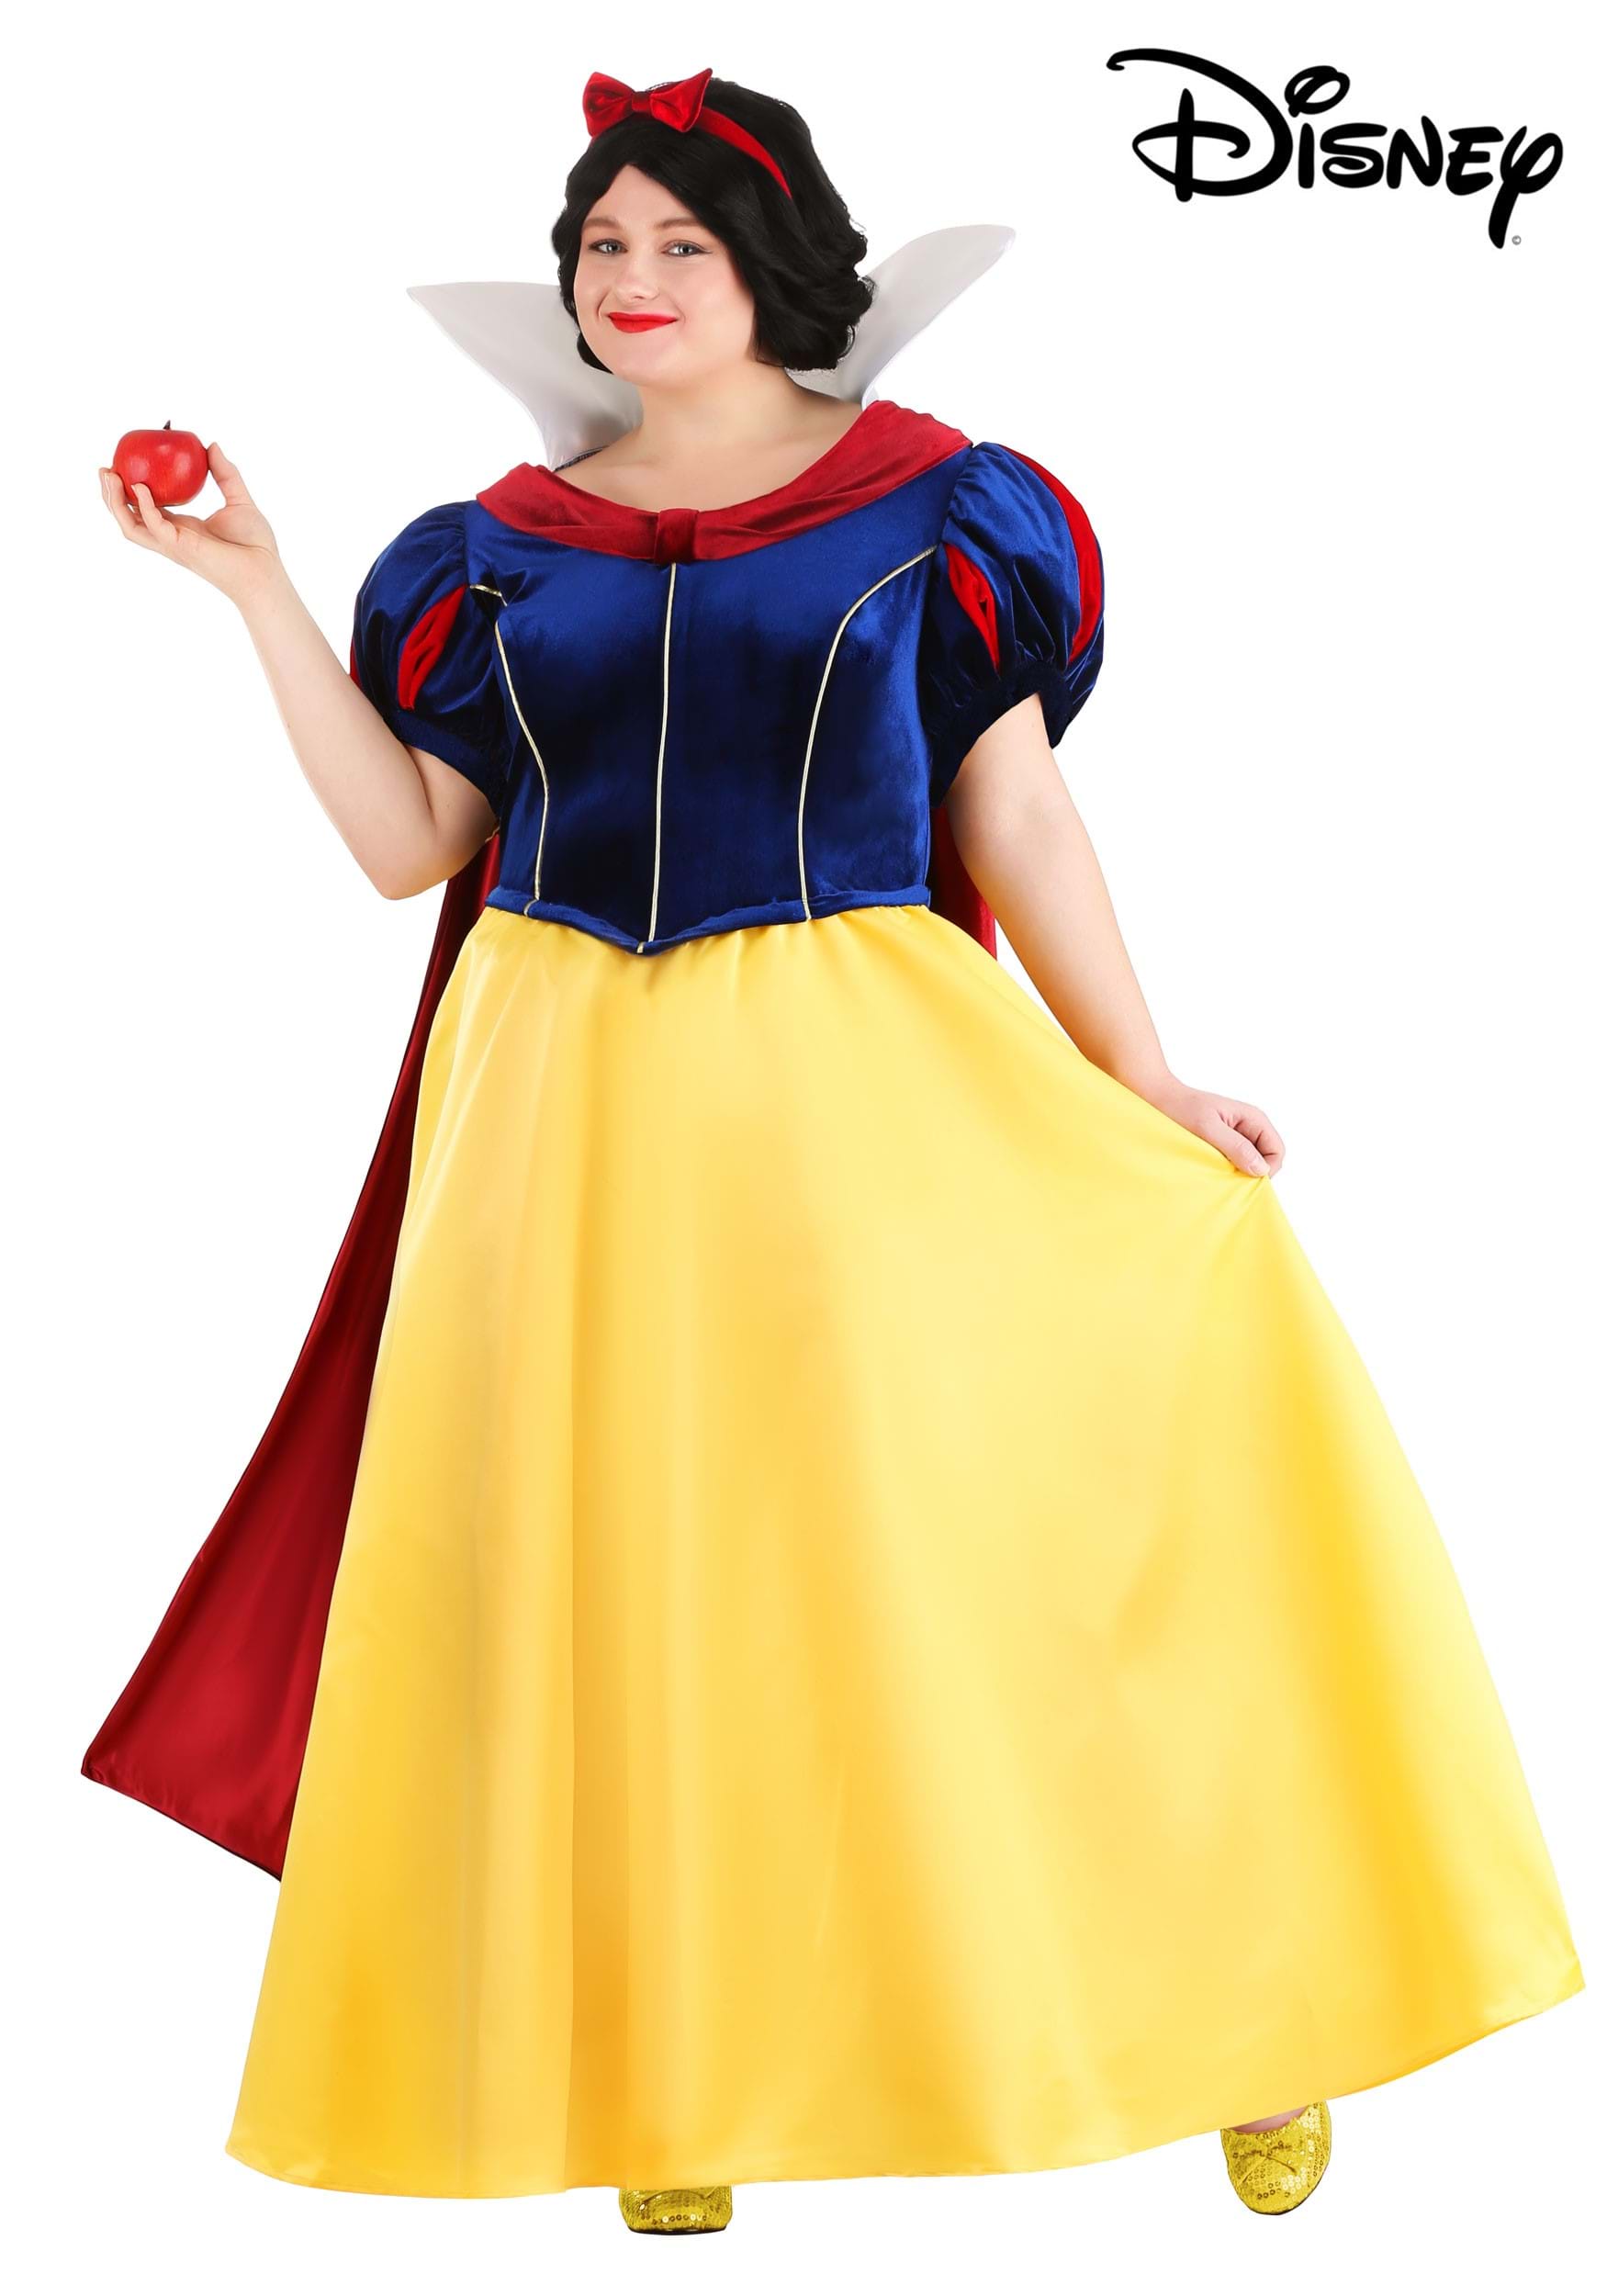 Plus Size Disney Snow White Costume for ...